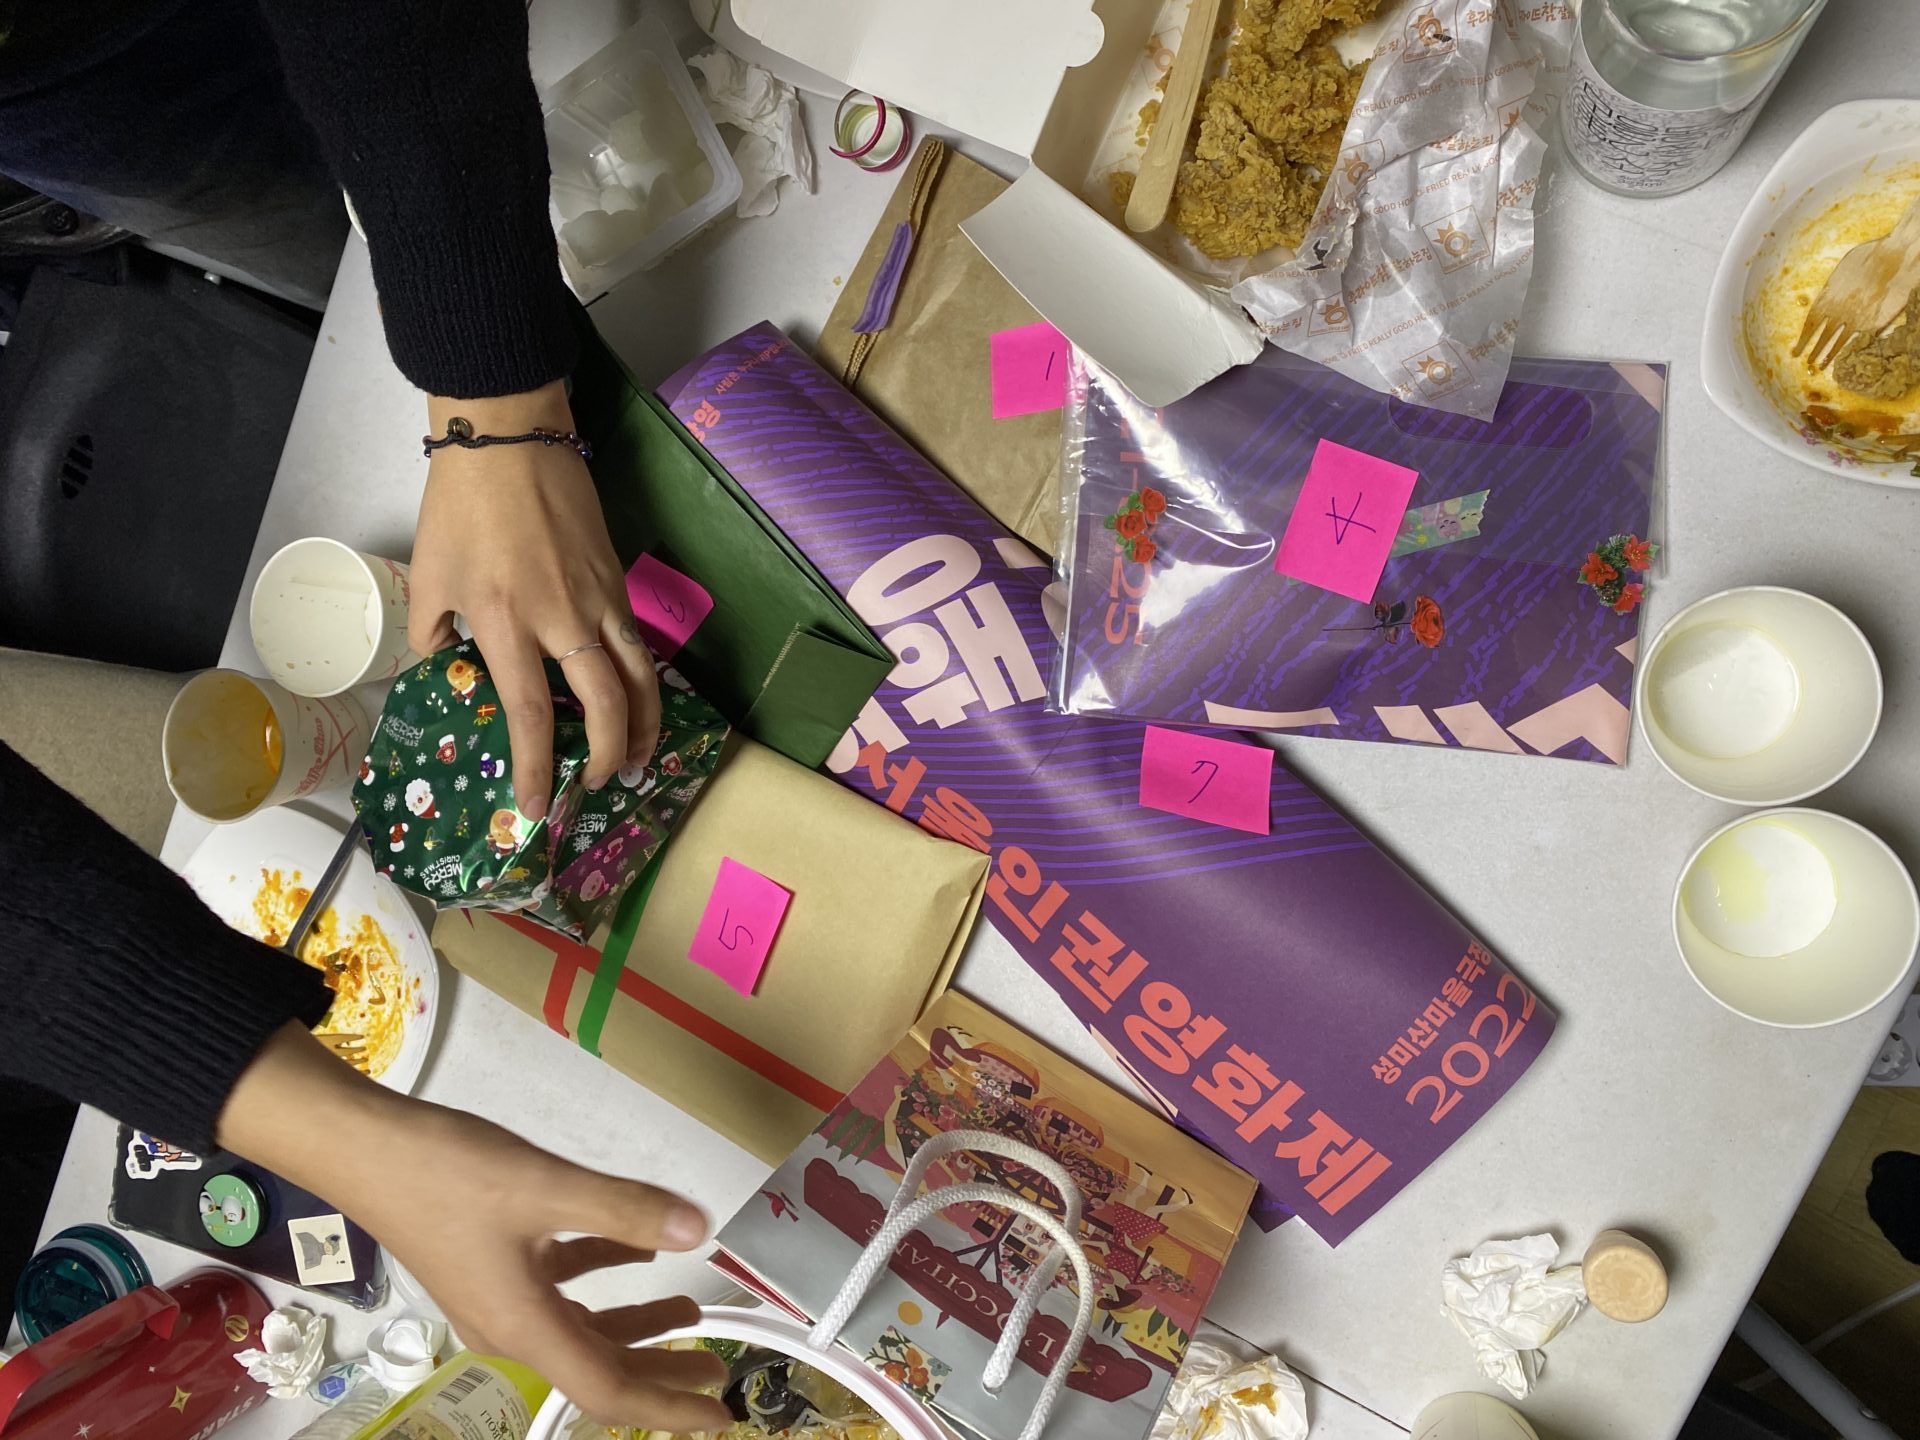 사진1. 간식과 술, 종이컵이 놓인 책상 가운데 각기 다른 크기와 모습으로 포장된 선물들이 1번부터 7번까지의 번호를 달고 놓여 있다. 누군가의 손이 선물들을 정리하고 있다.